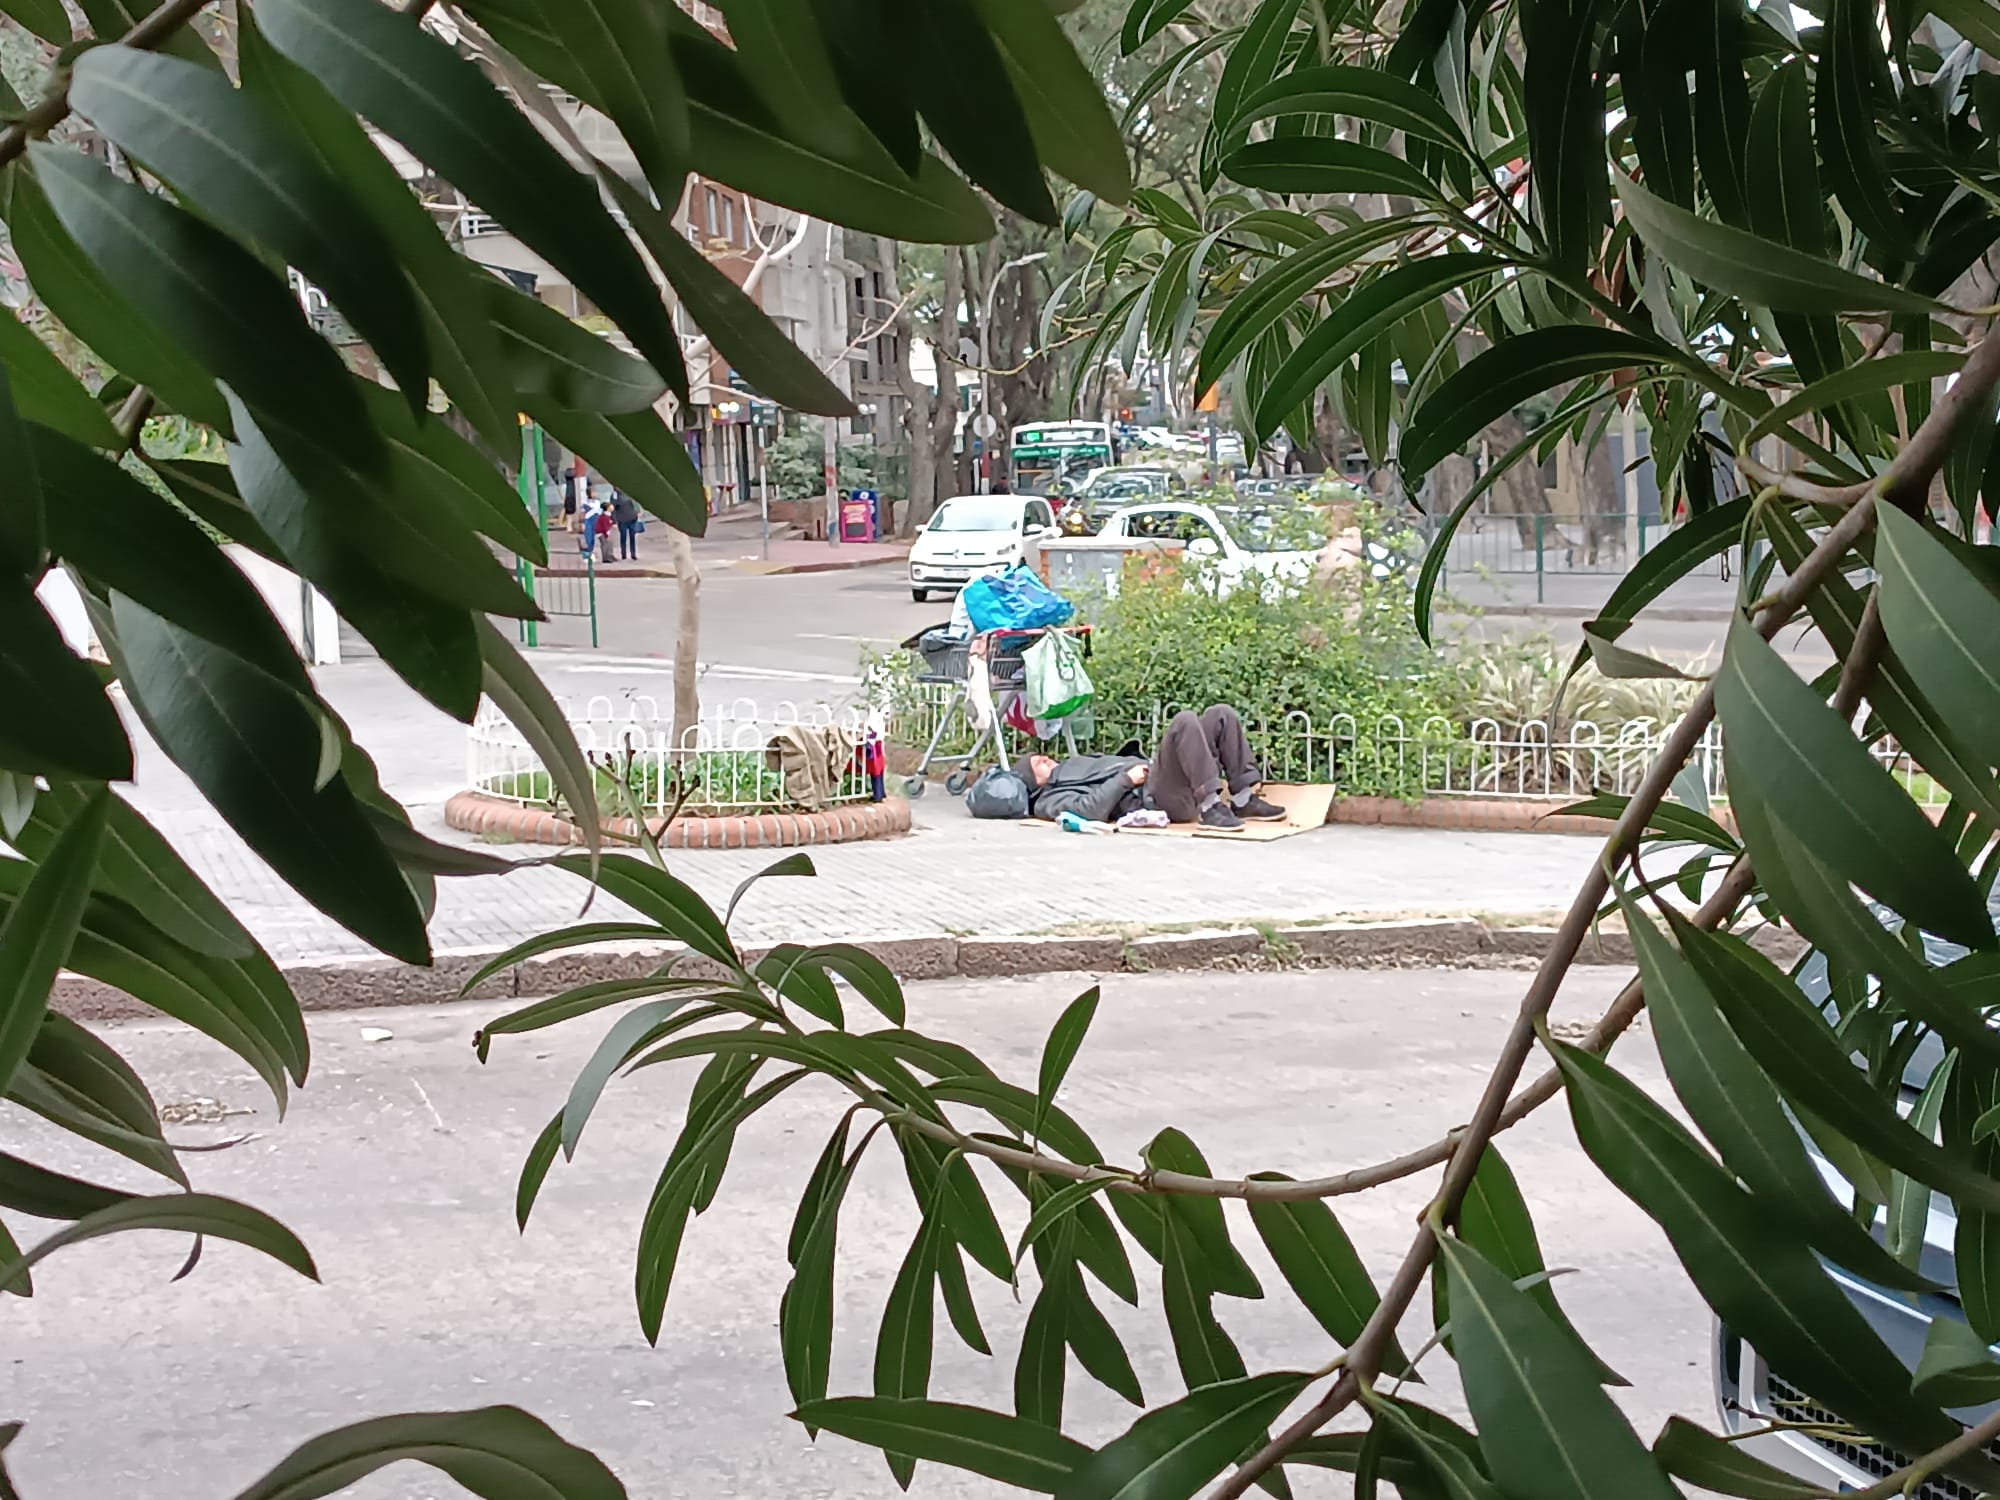 Un hermano que habita ‘involuntariamente’ en la calle, descansa junto a sus pocas pertenencias, en uno de los barrios de Montevideo. (Foto: cortesía Alberto Pigola)